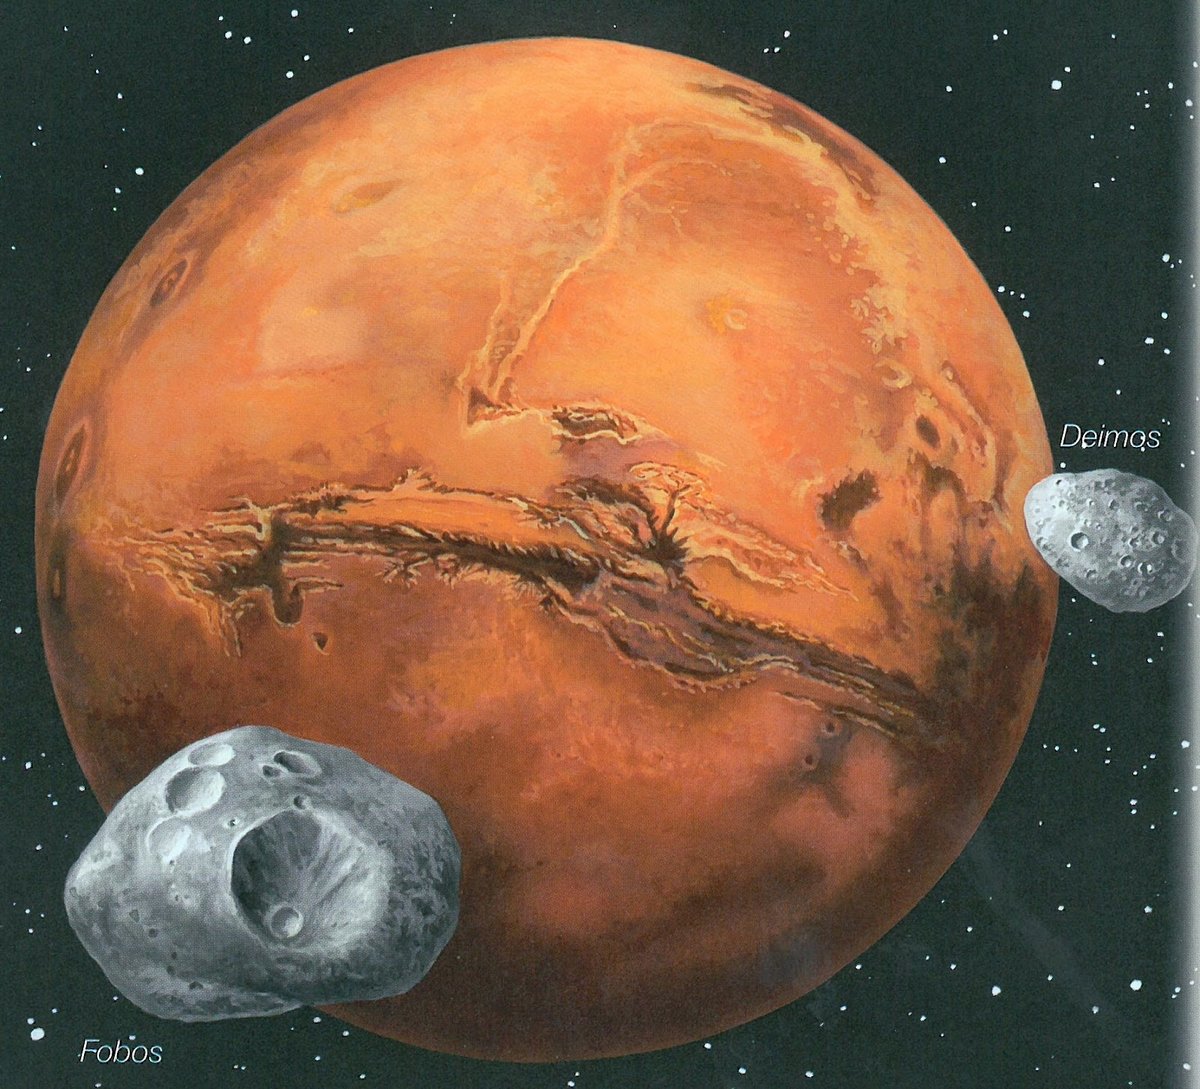 Страх и ужас спутники какой планеты. Марс Планета спутники Фобос и Деймос. Марс Фобос и Деймос. Марс Фобос Деймос Планета. Деймос (Спутник Марса).